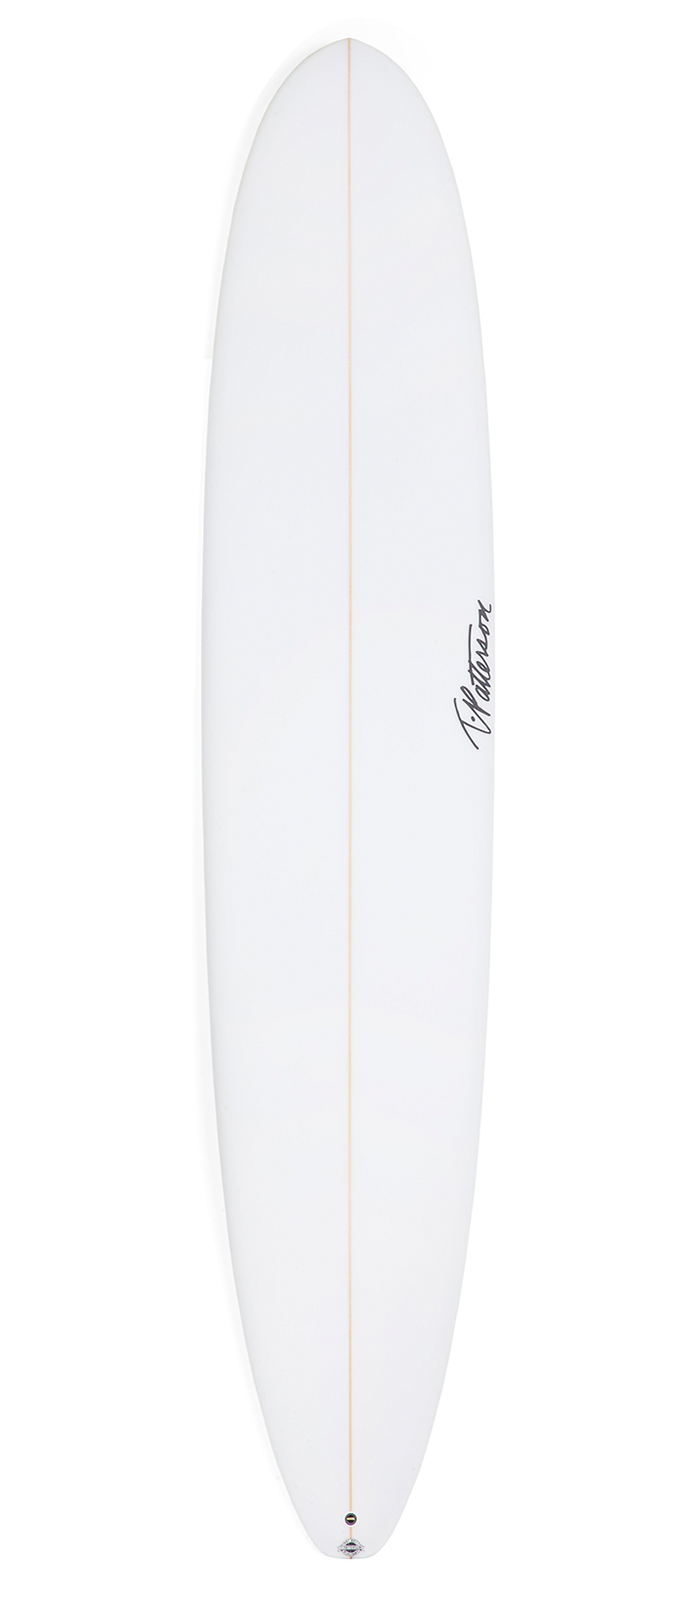 JB-1 surfboard model deck